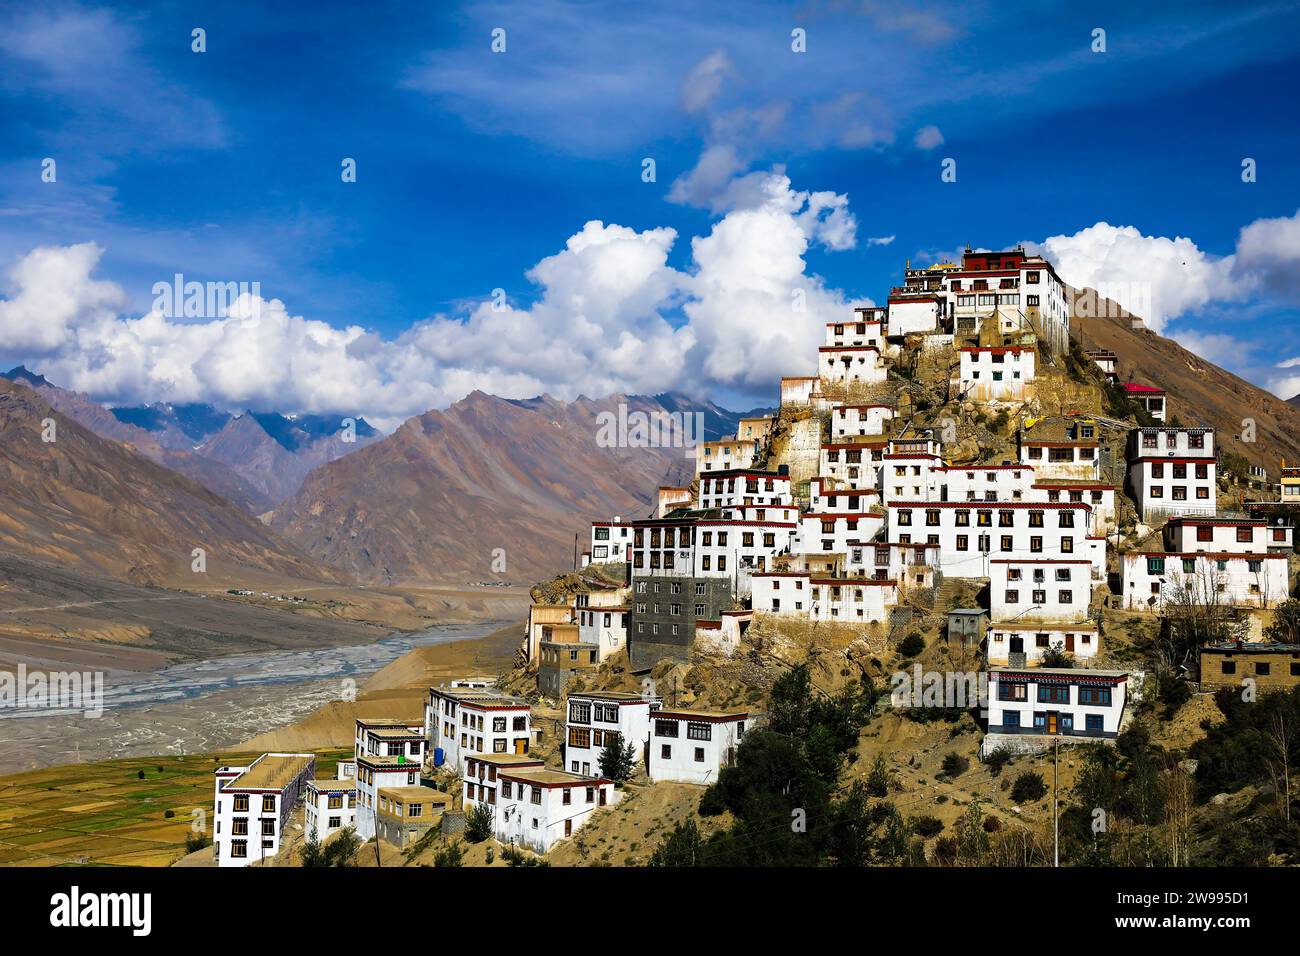 Le monastère clé dans l'Himalaya indien, dans la belle vallée de Spiti Banque D'Images